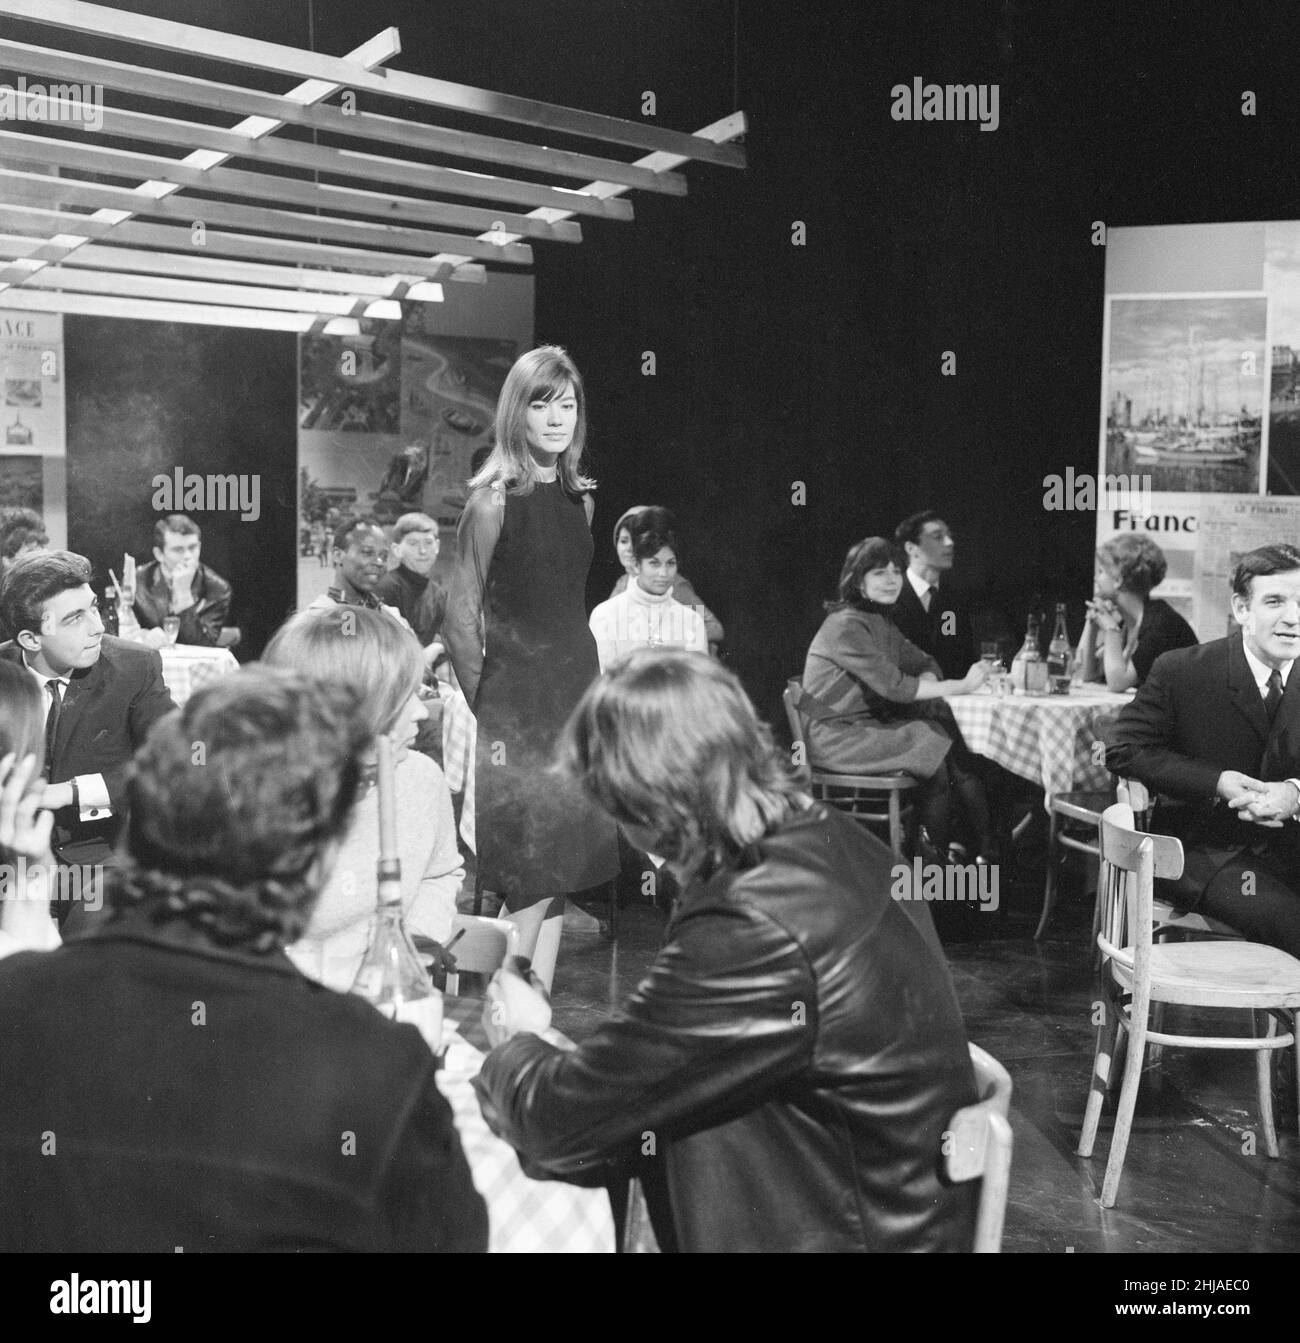 Francoise Hardy, französische Sängerin, tritt am 21st. Februar 1964 in einem Studio, das wie ein französisches Bistro-Restaurant aussieht, auf der ITV-Musikshow they've Sold A Million, einer von Rediffusion produzierten TV-Show, auf, die während der Dreharbeiten abgebildet wurde. Das Programm wurde erstmals am Mittwoch, den 26th. Februar 1964, ausgestrahlt. Stockfoto